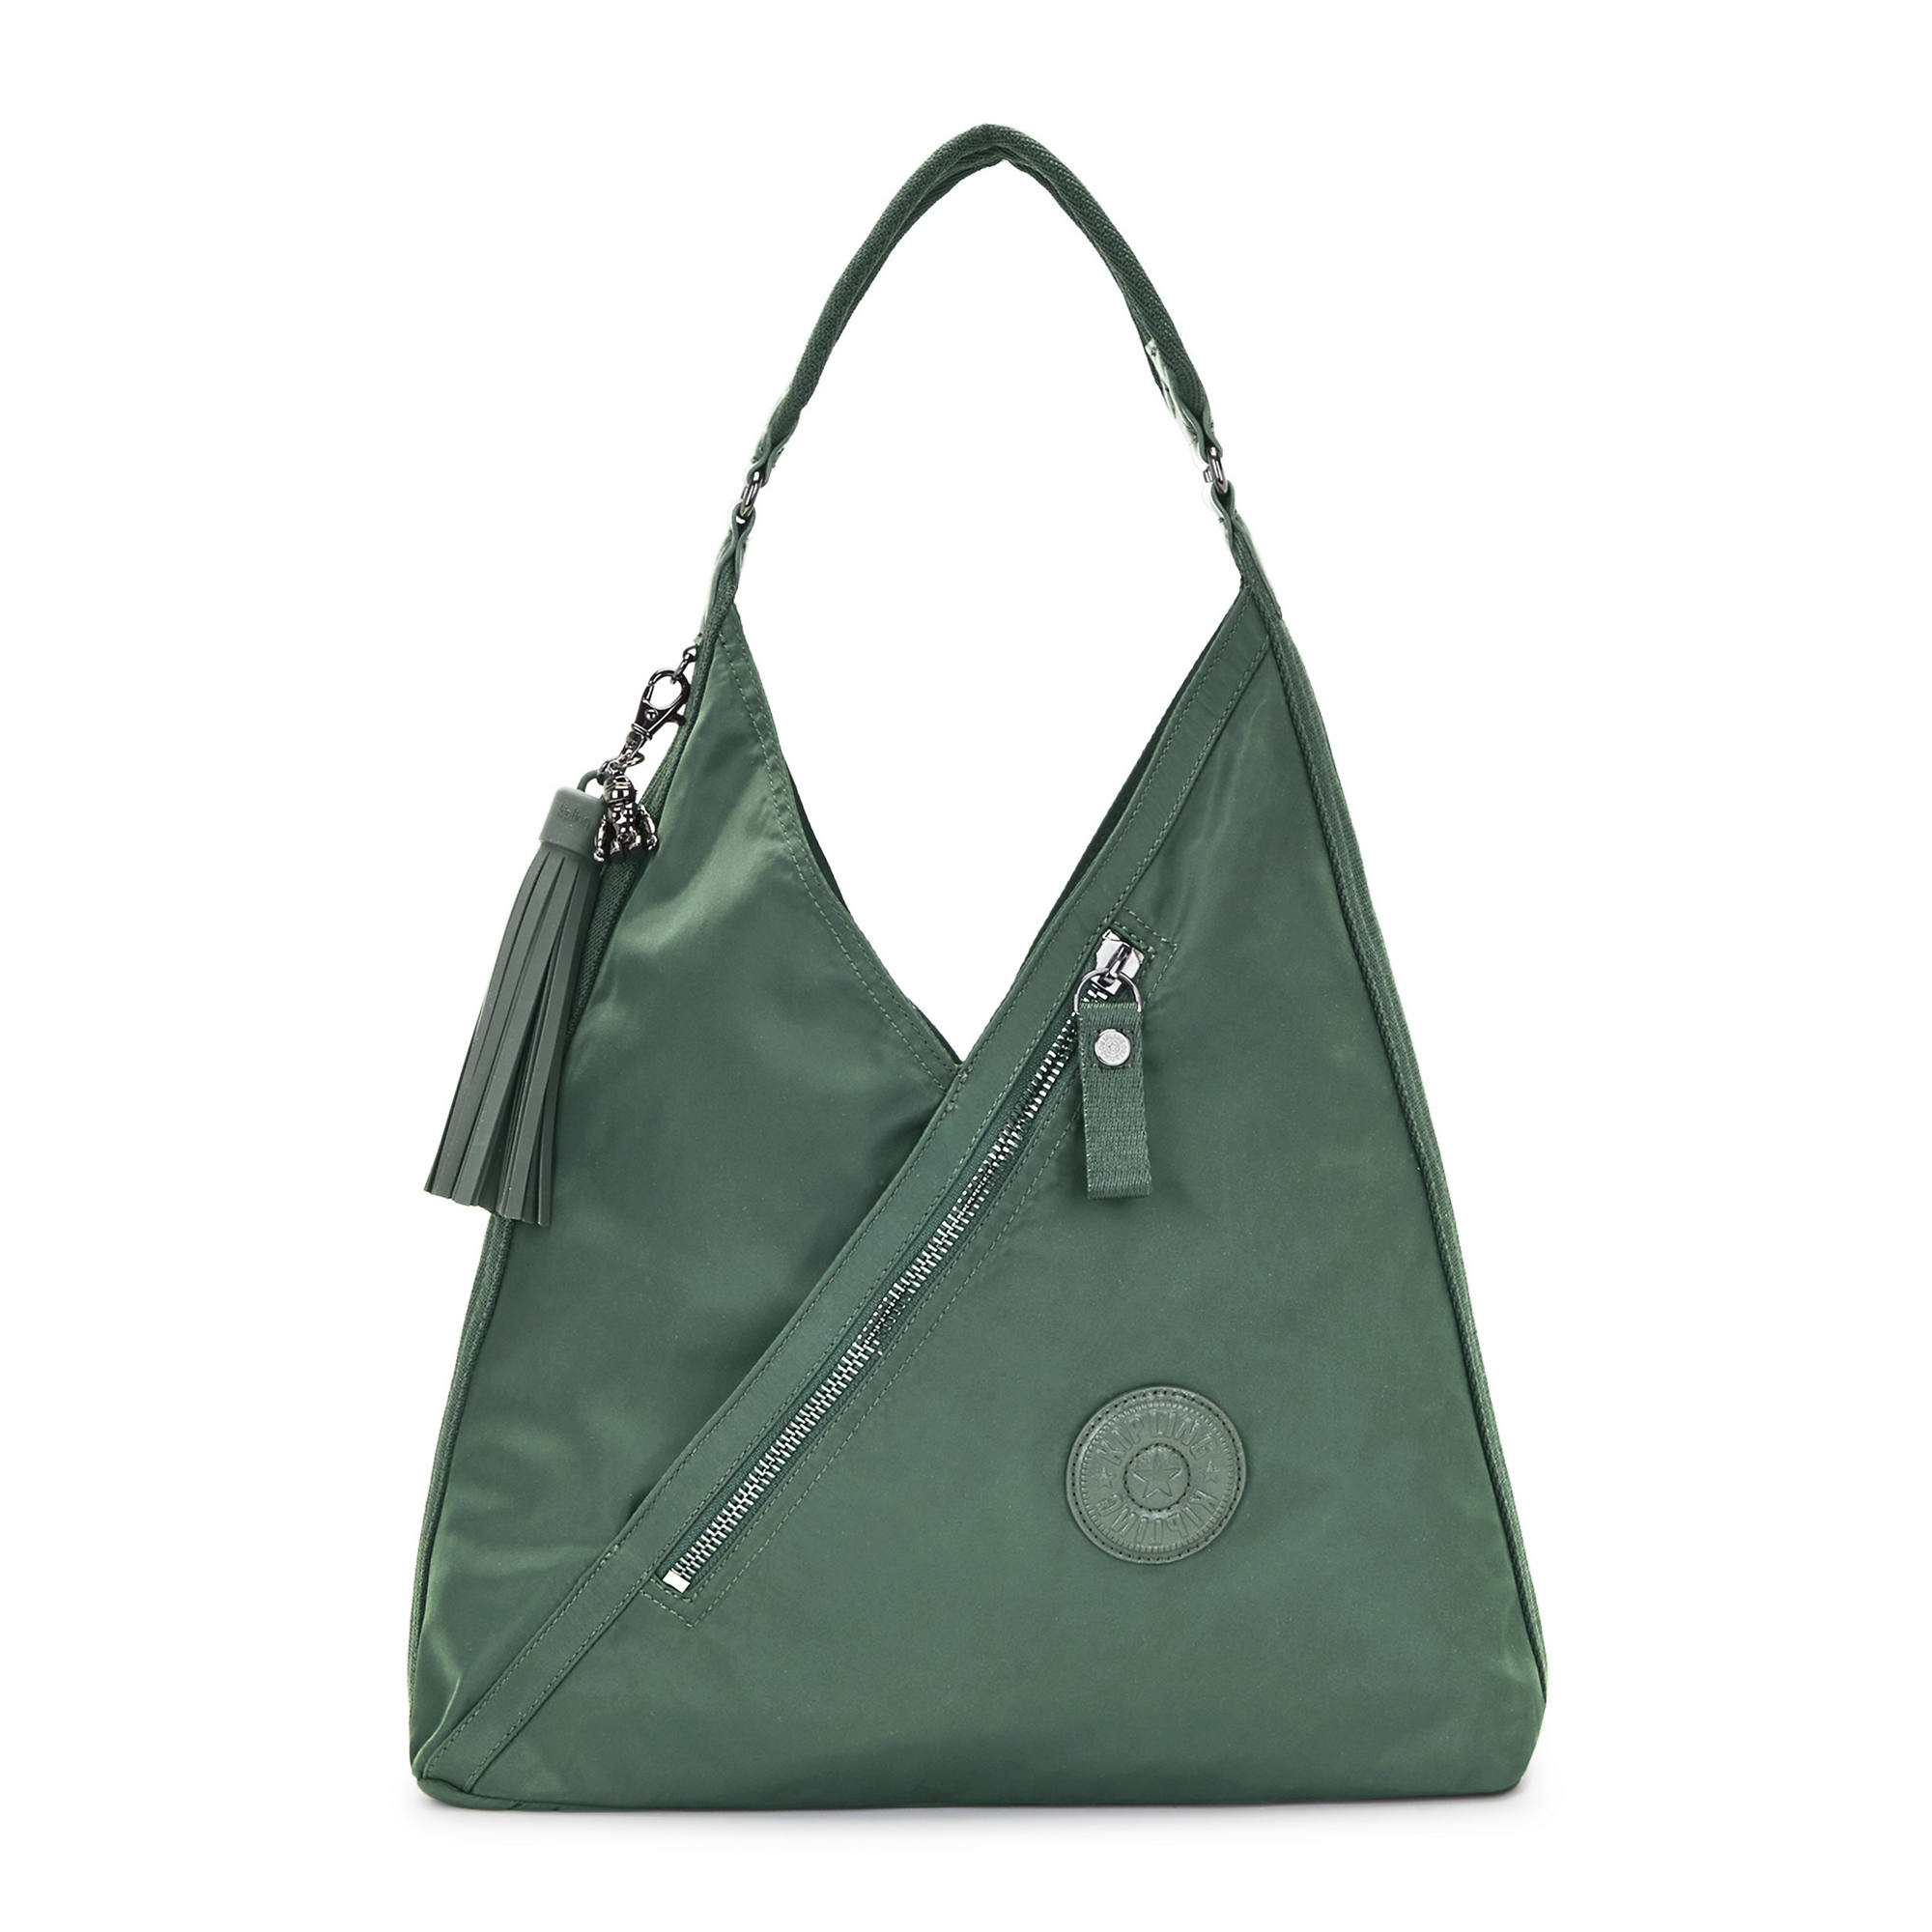 Kipling Melissa Seafoam MINT Green Shoulder Crossbody Bag Purse Hb6907 RARE  for sale online | eBay